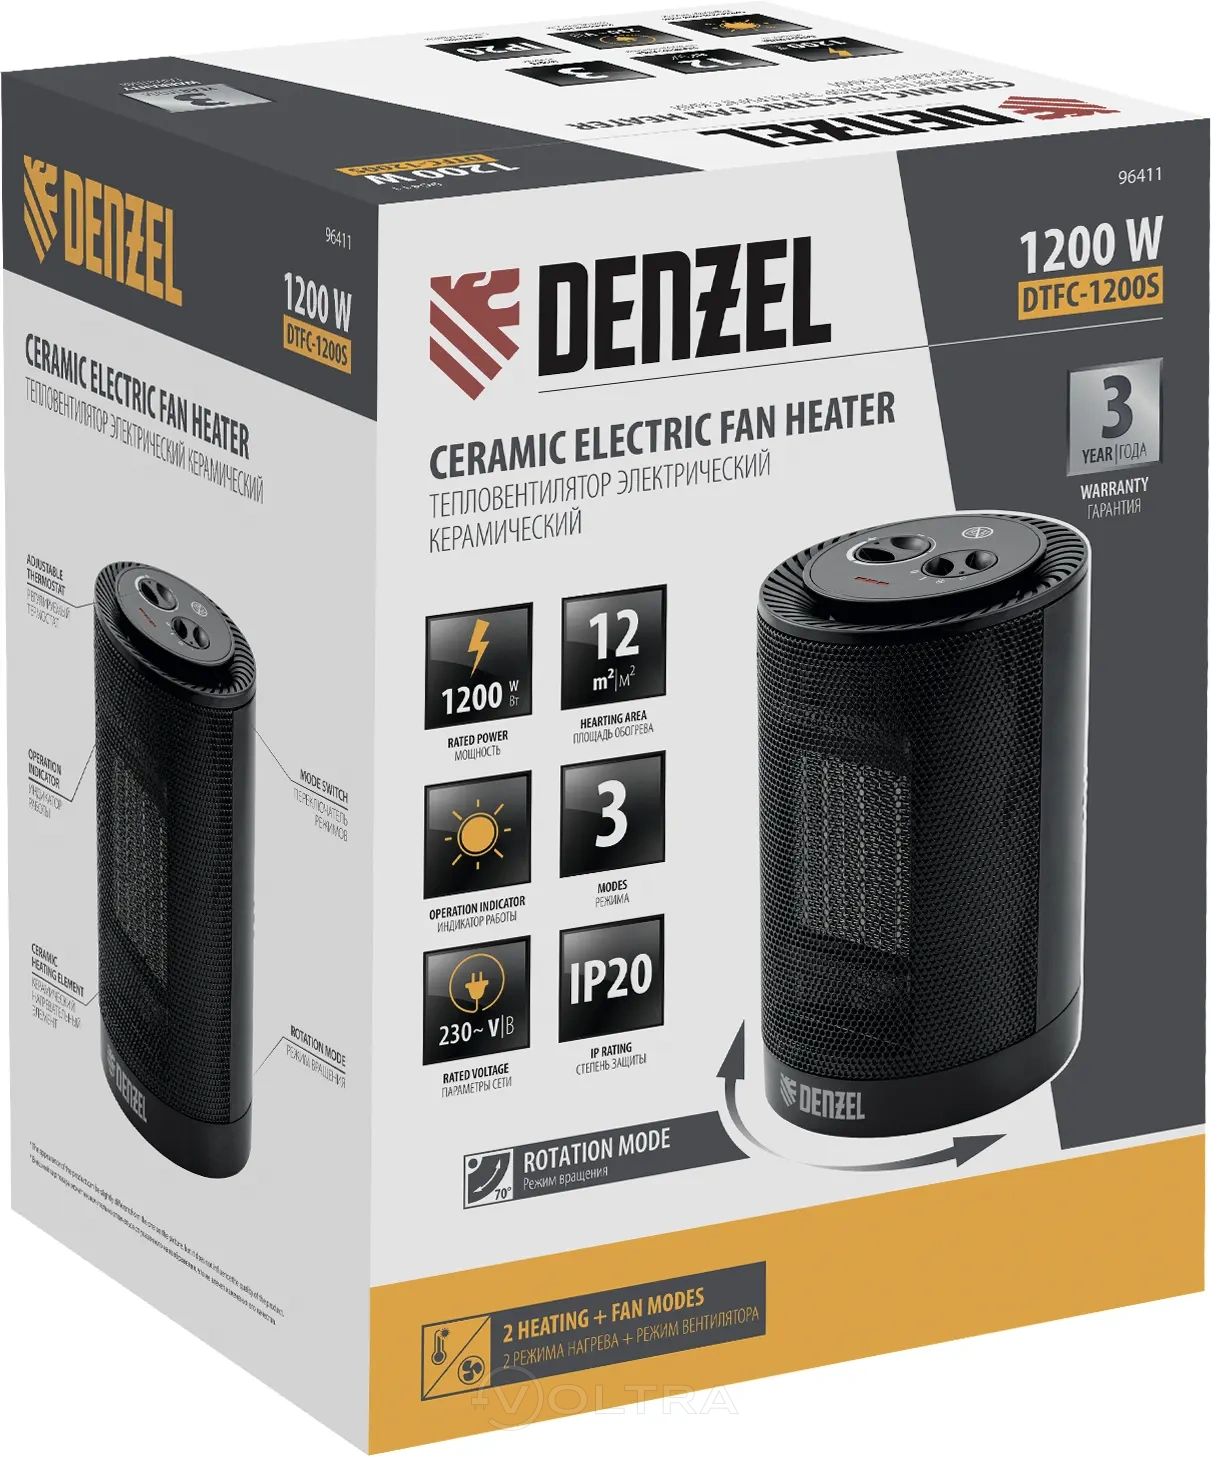 Denzel DTFC-1200S (96411)